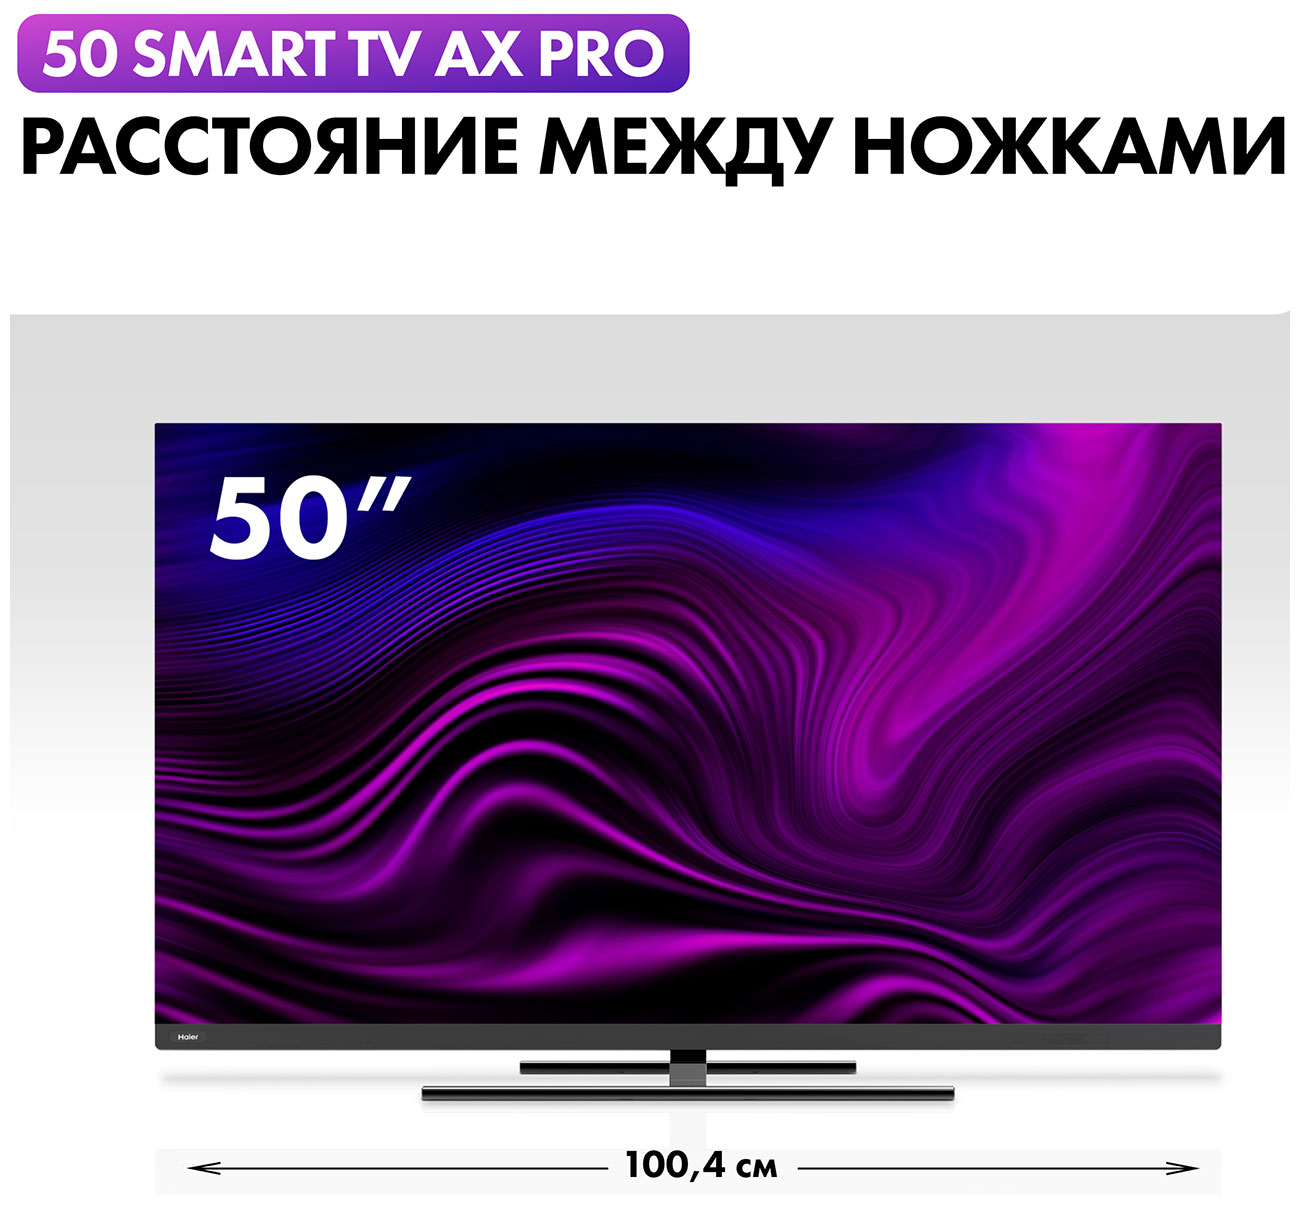 Телевизор Haier 50 Smart TV AX Pro цена и фото